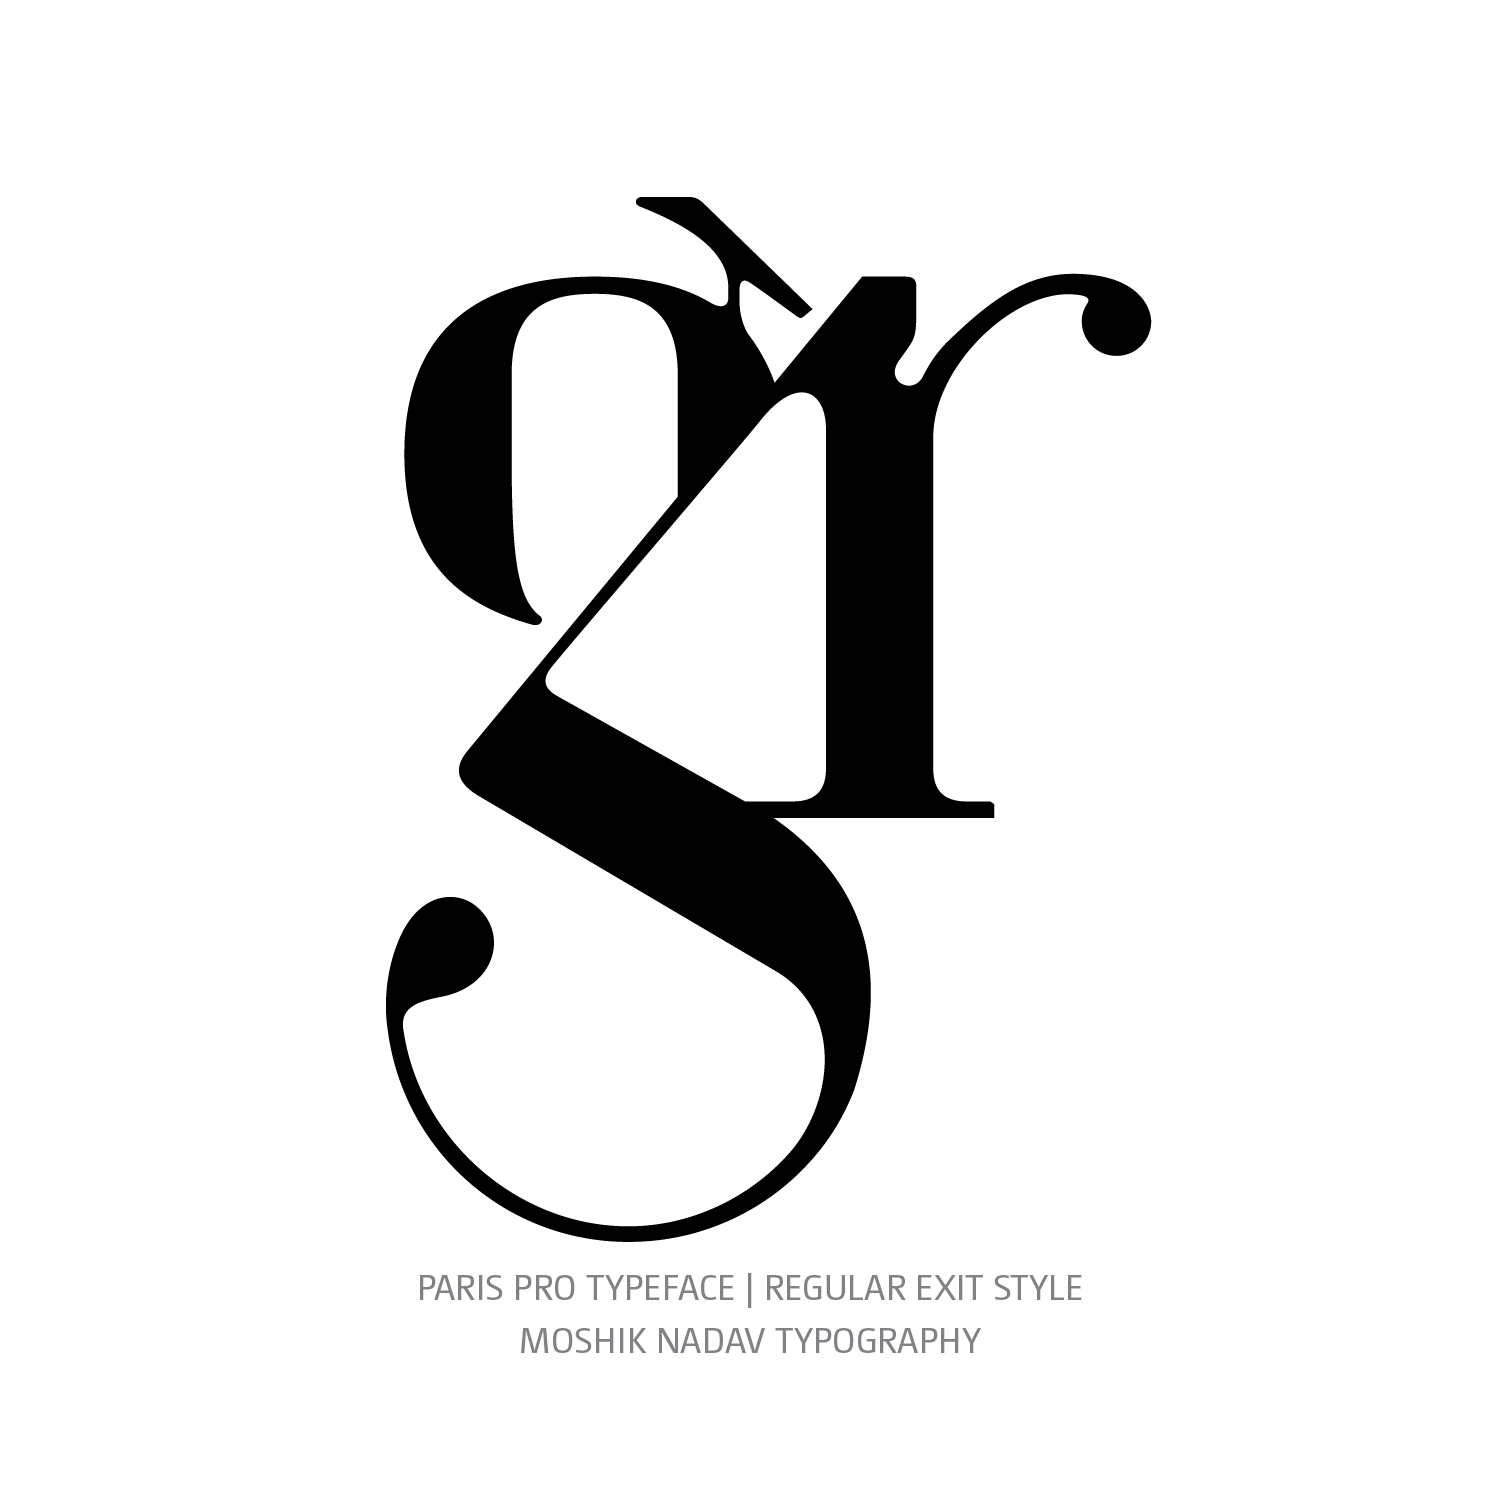 Paris Pro Typeface Regular Exit gr ligature